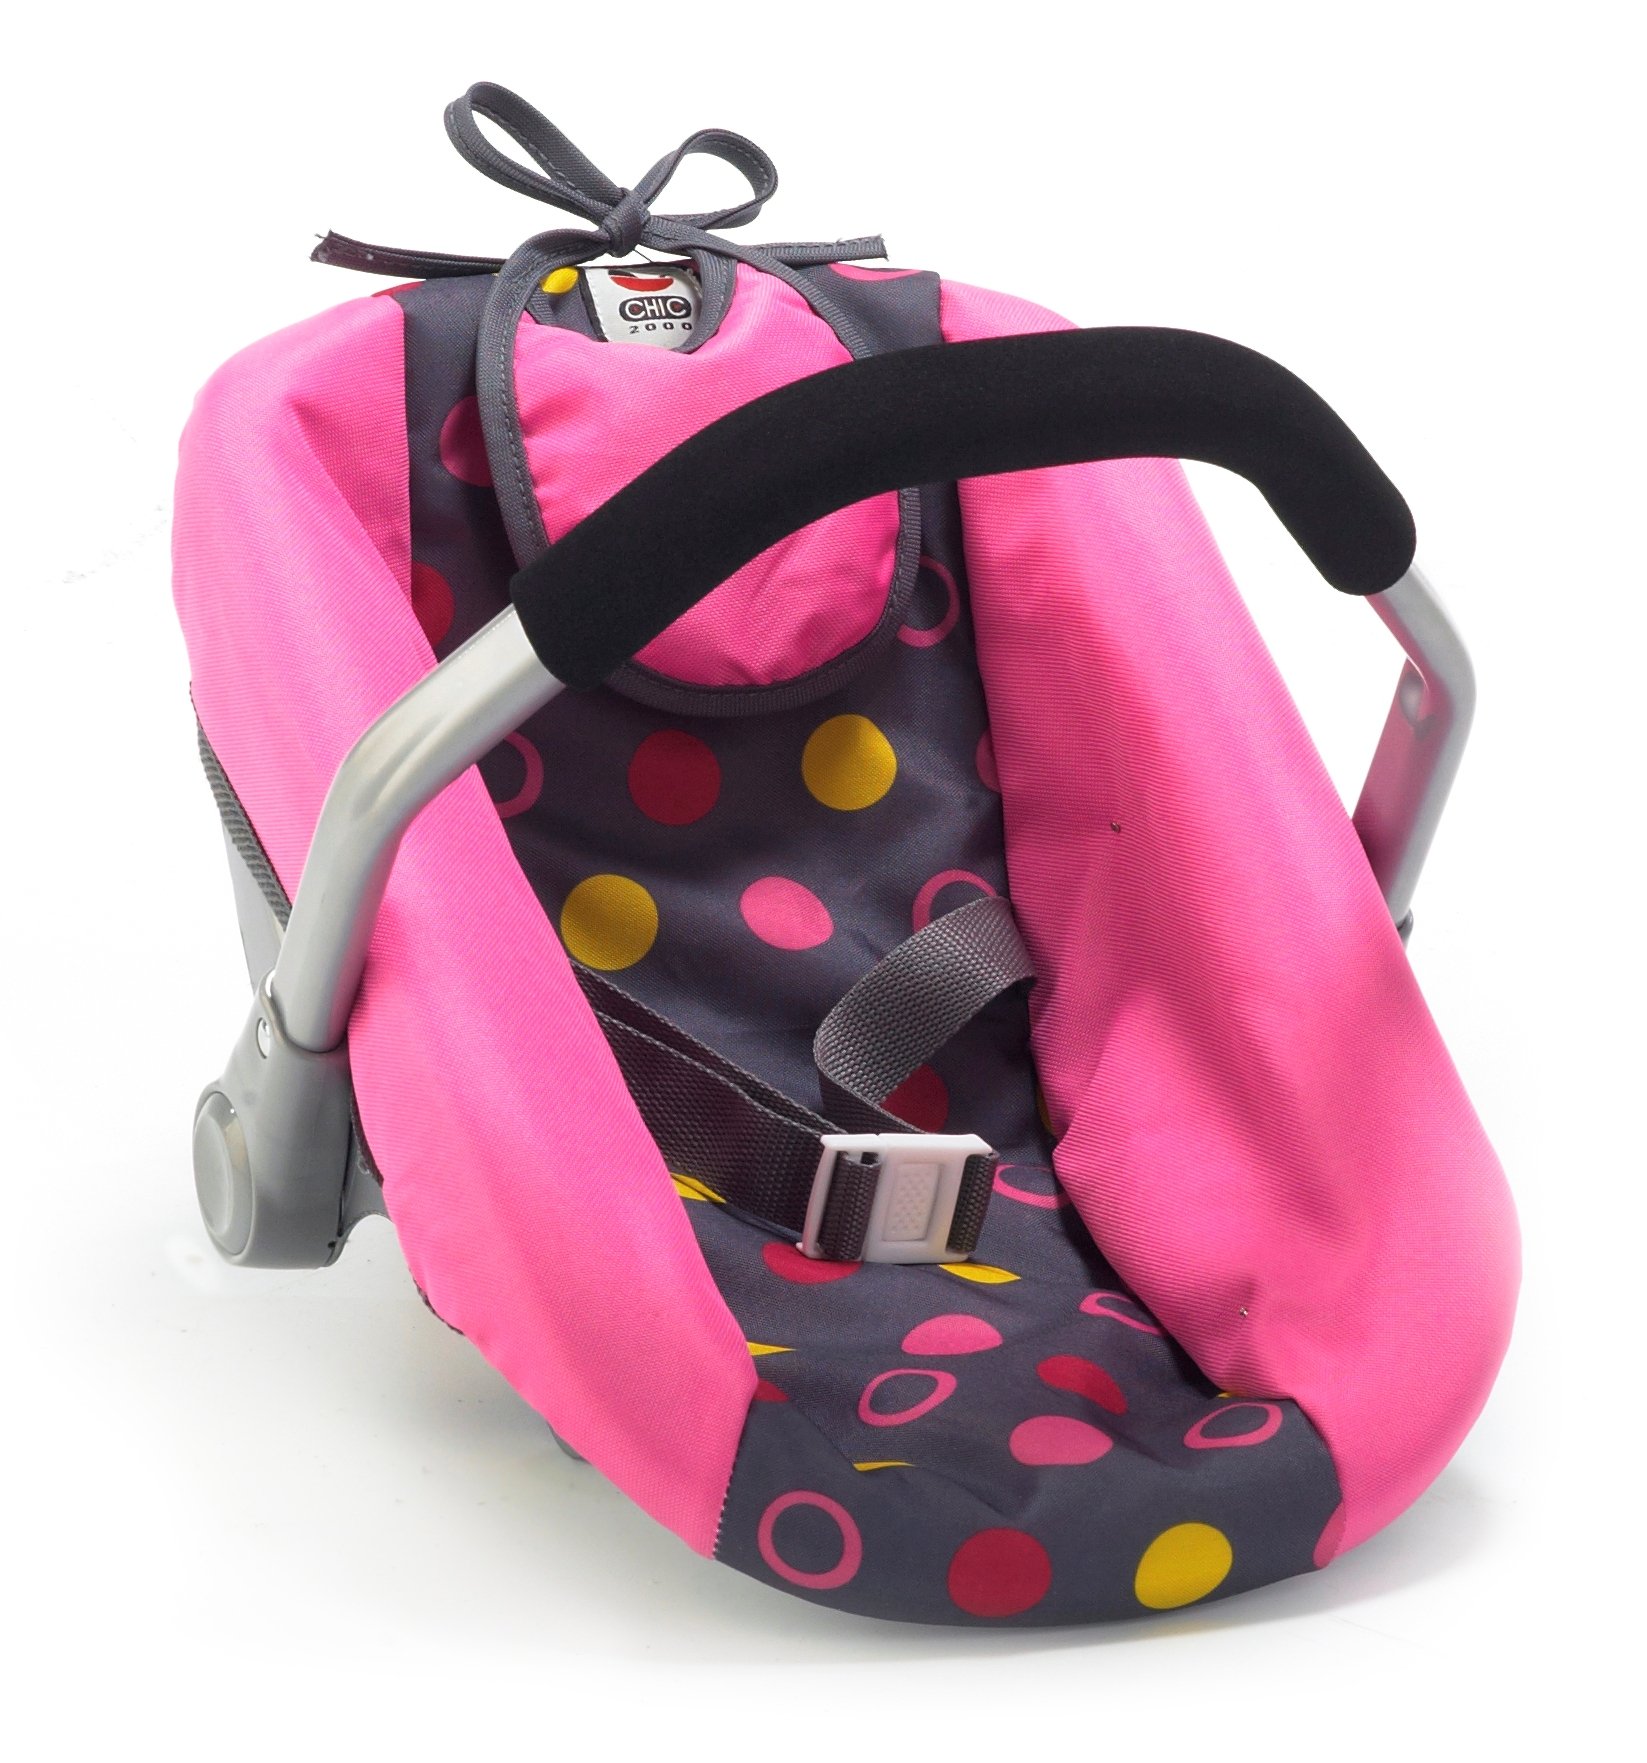 Bayer Chic 2000 708 24 Puppen-Autositz für Babypuppen, pink